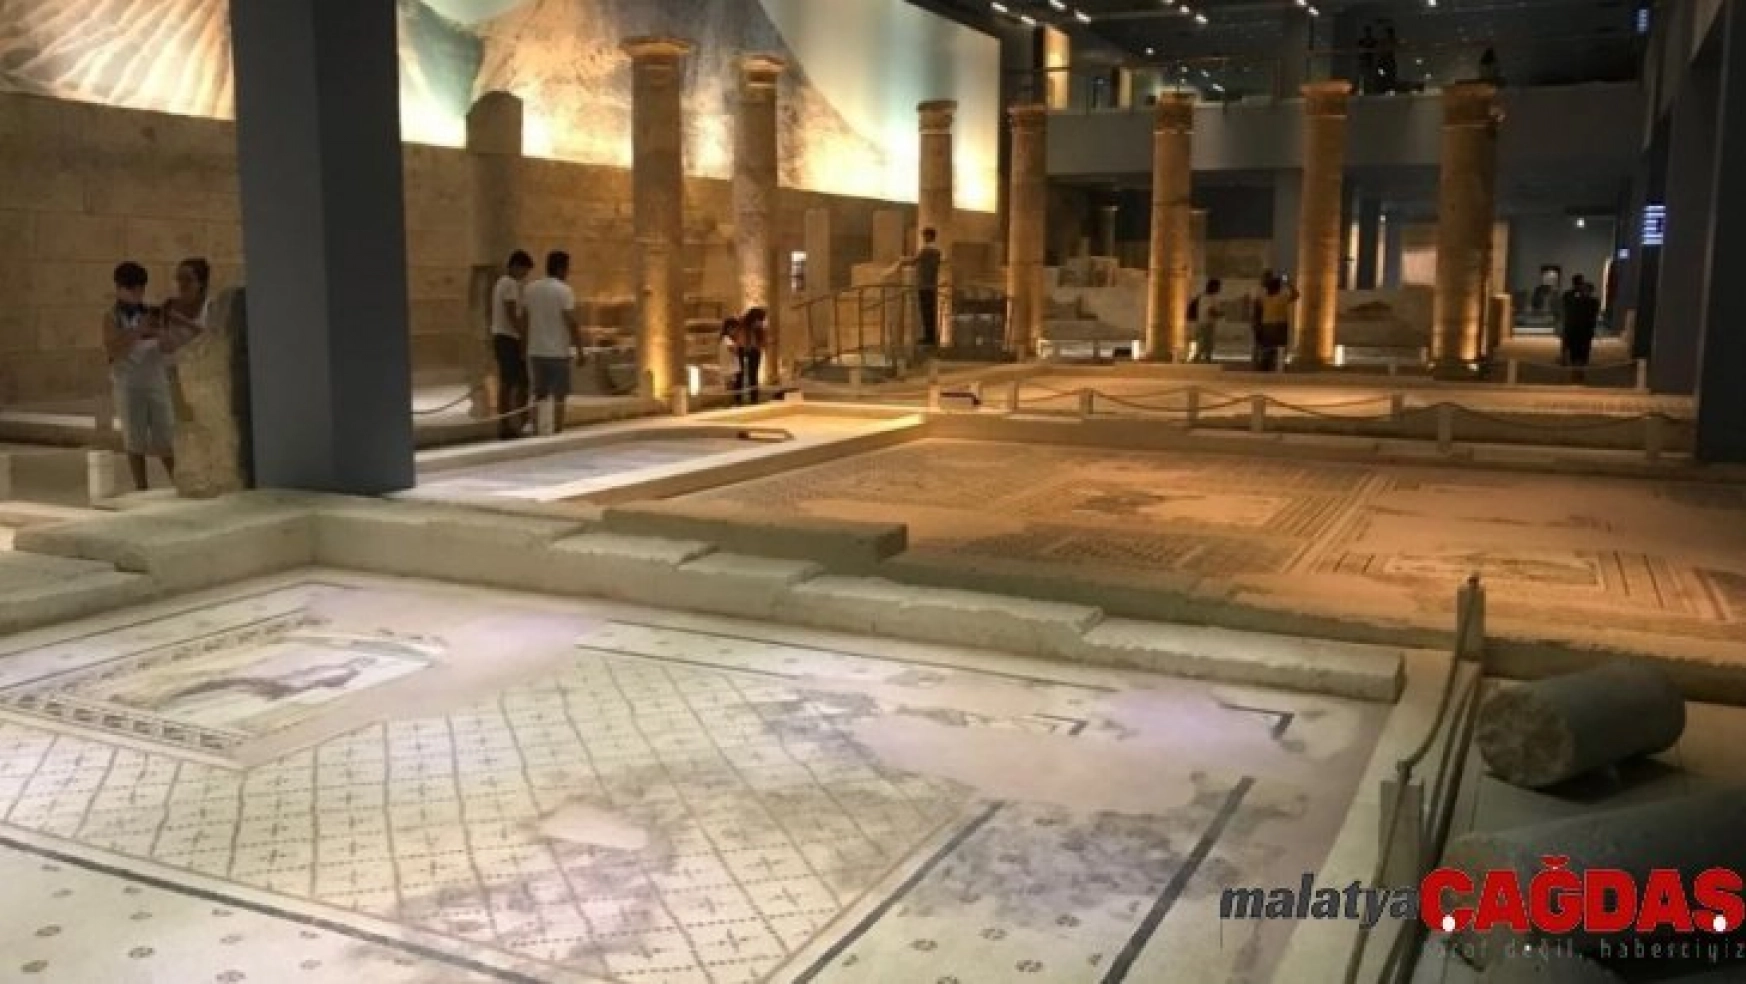 Zeugma Mozaik Müzesi'nde 3 kişi görevden uzaklaştırıldı